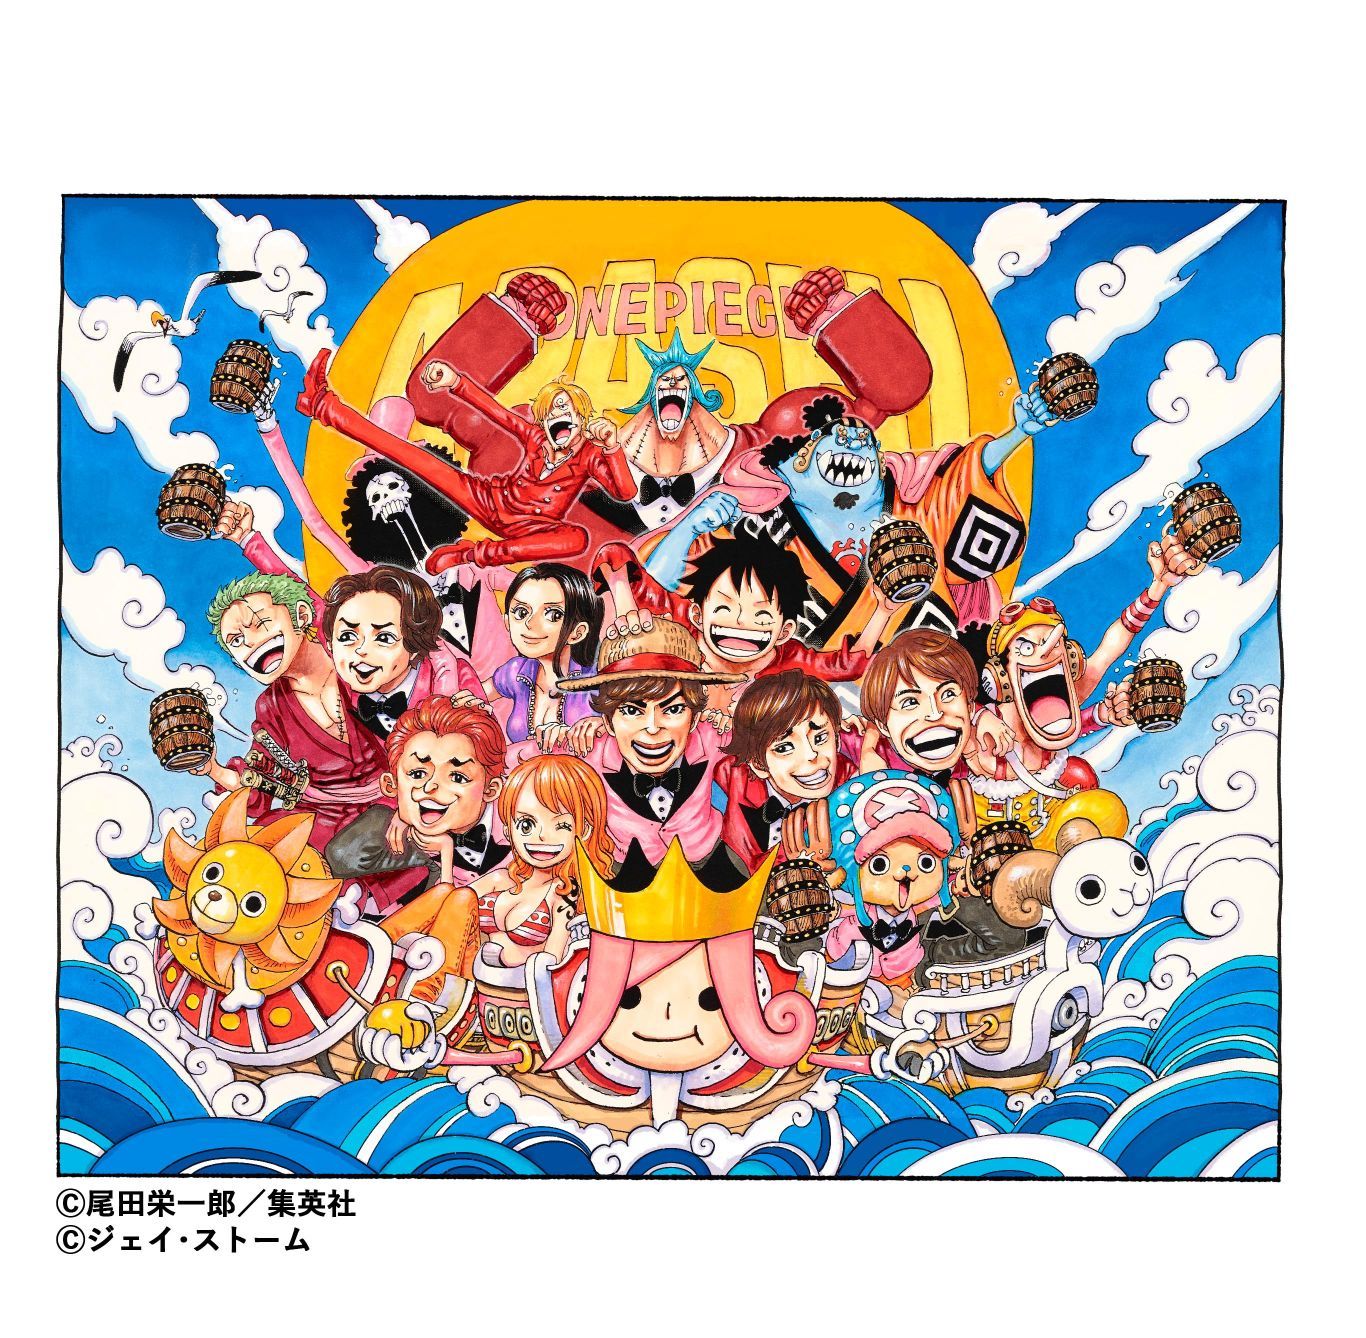 嵐 One Piece のコラボレーションが実現 スペシャルミュージックビデオのティザー映像 描き下ろしイラストを公開 Spice エンタメ特化型情報メディア スパイス